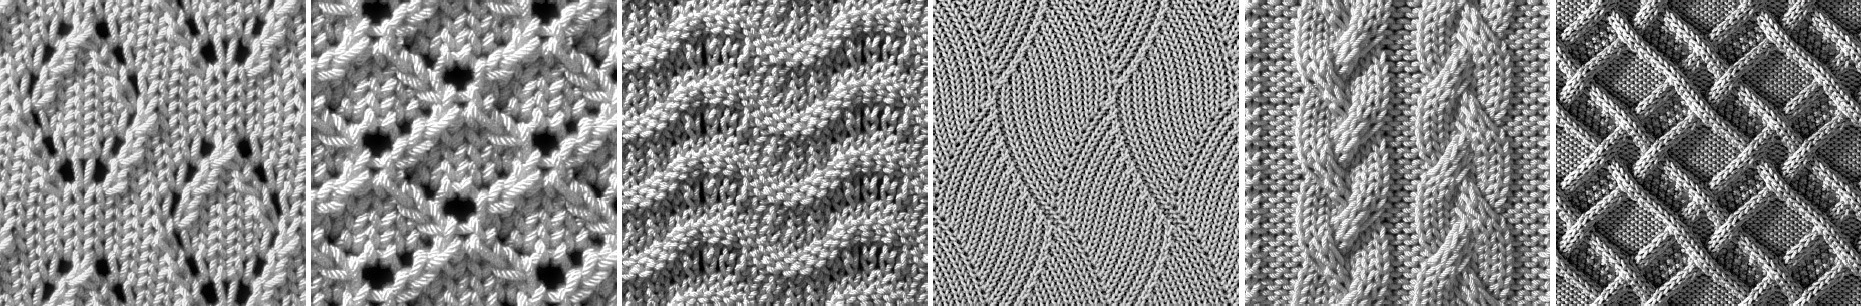 medium_knitpatterns.jpg